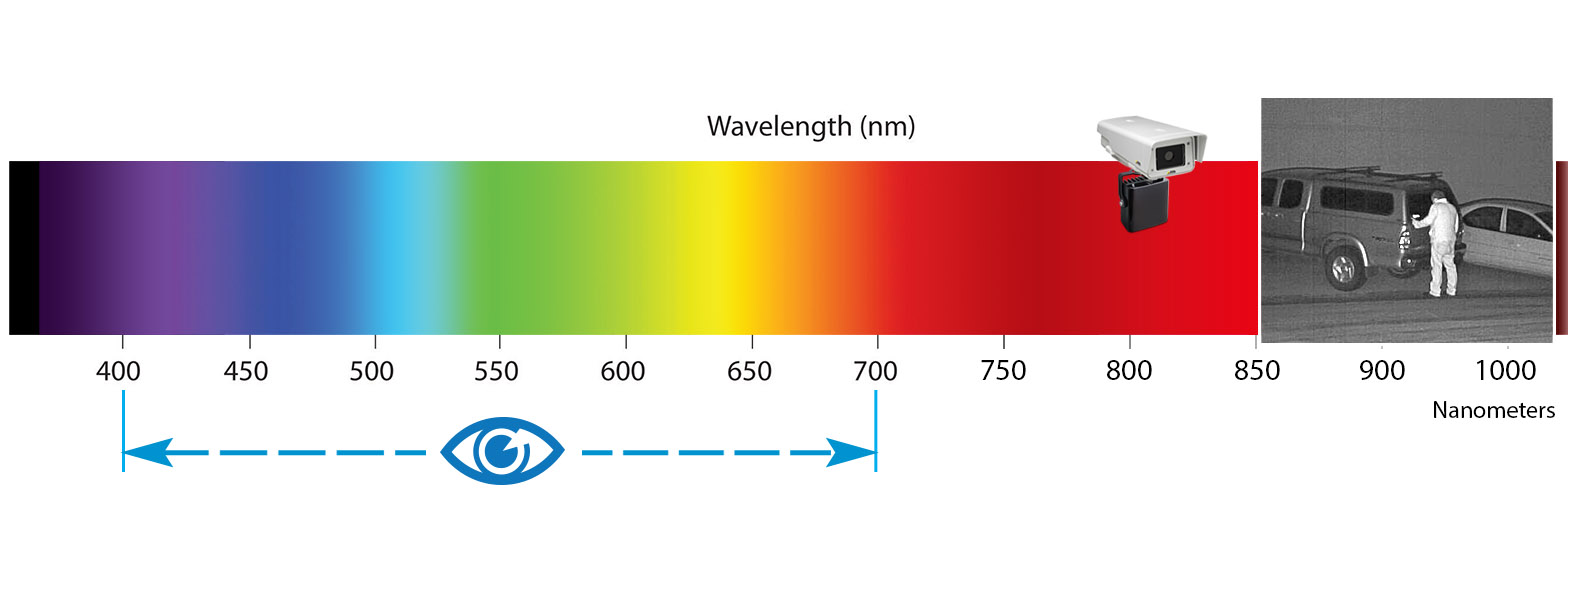 Co je to infračervené iluminátor?